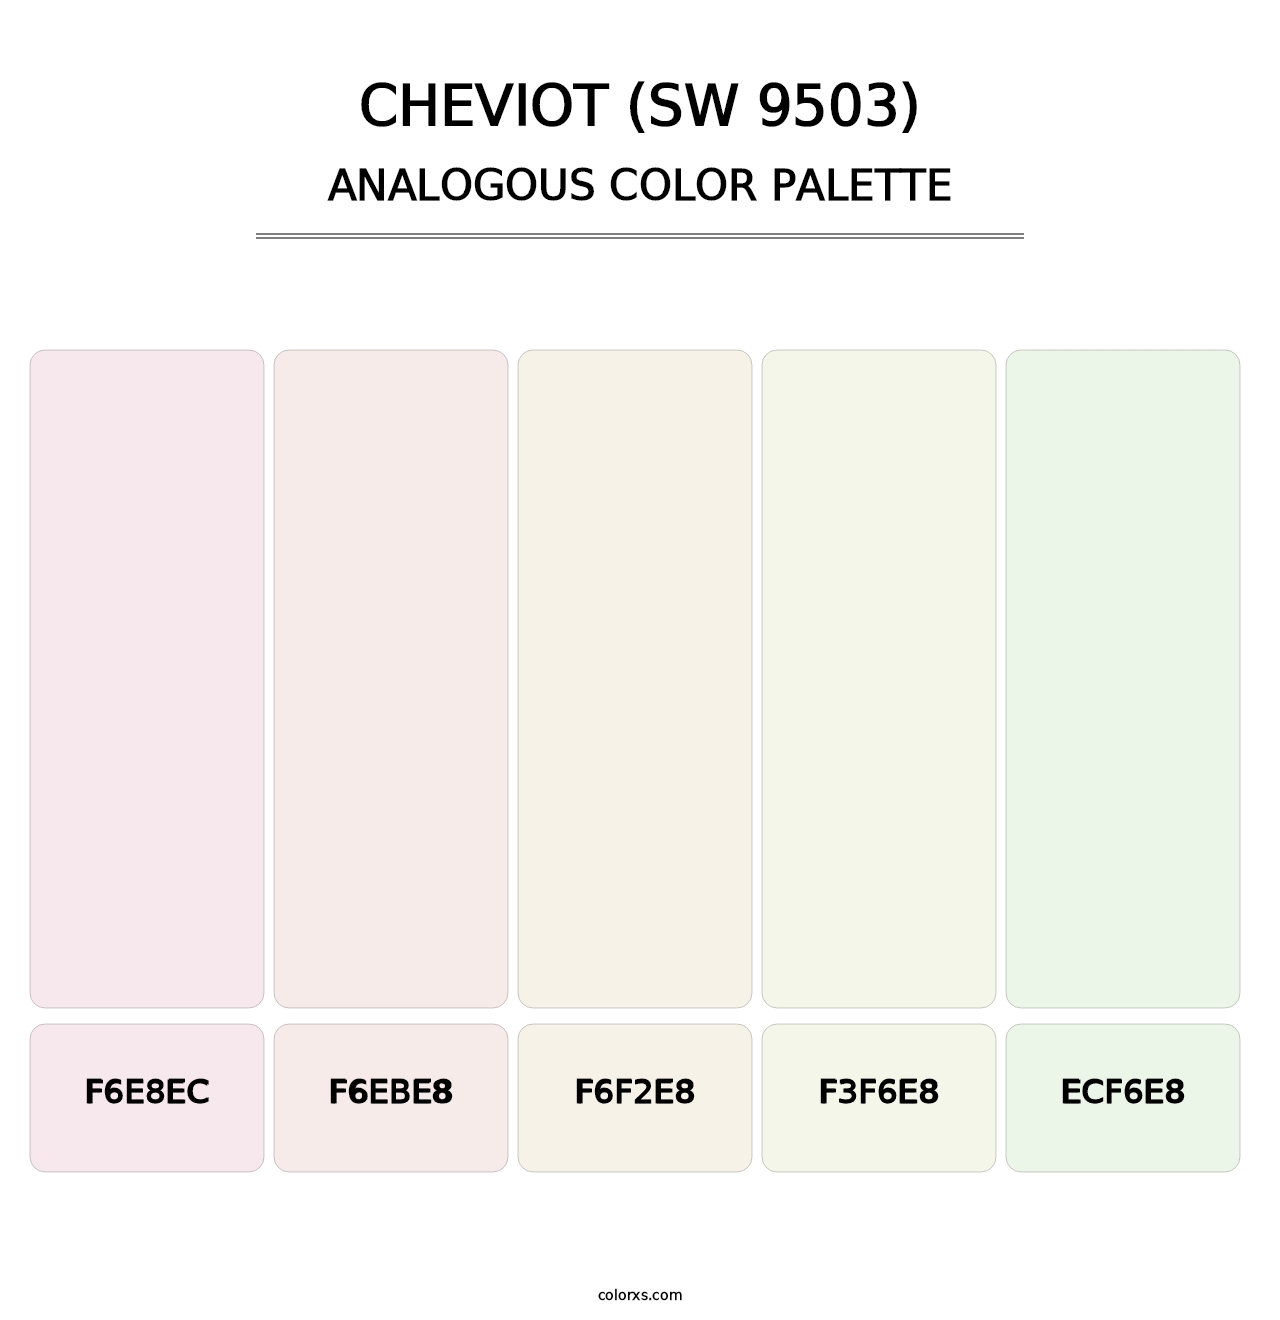 Cheviot (SW 9503) - Analogous Color Palette